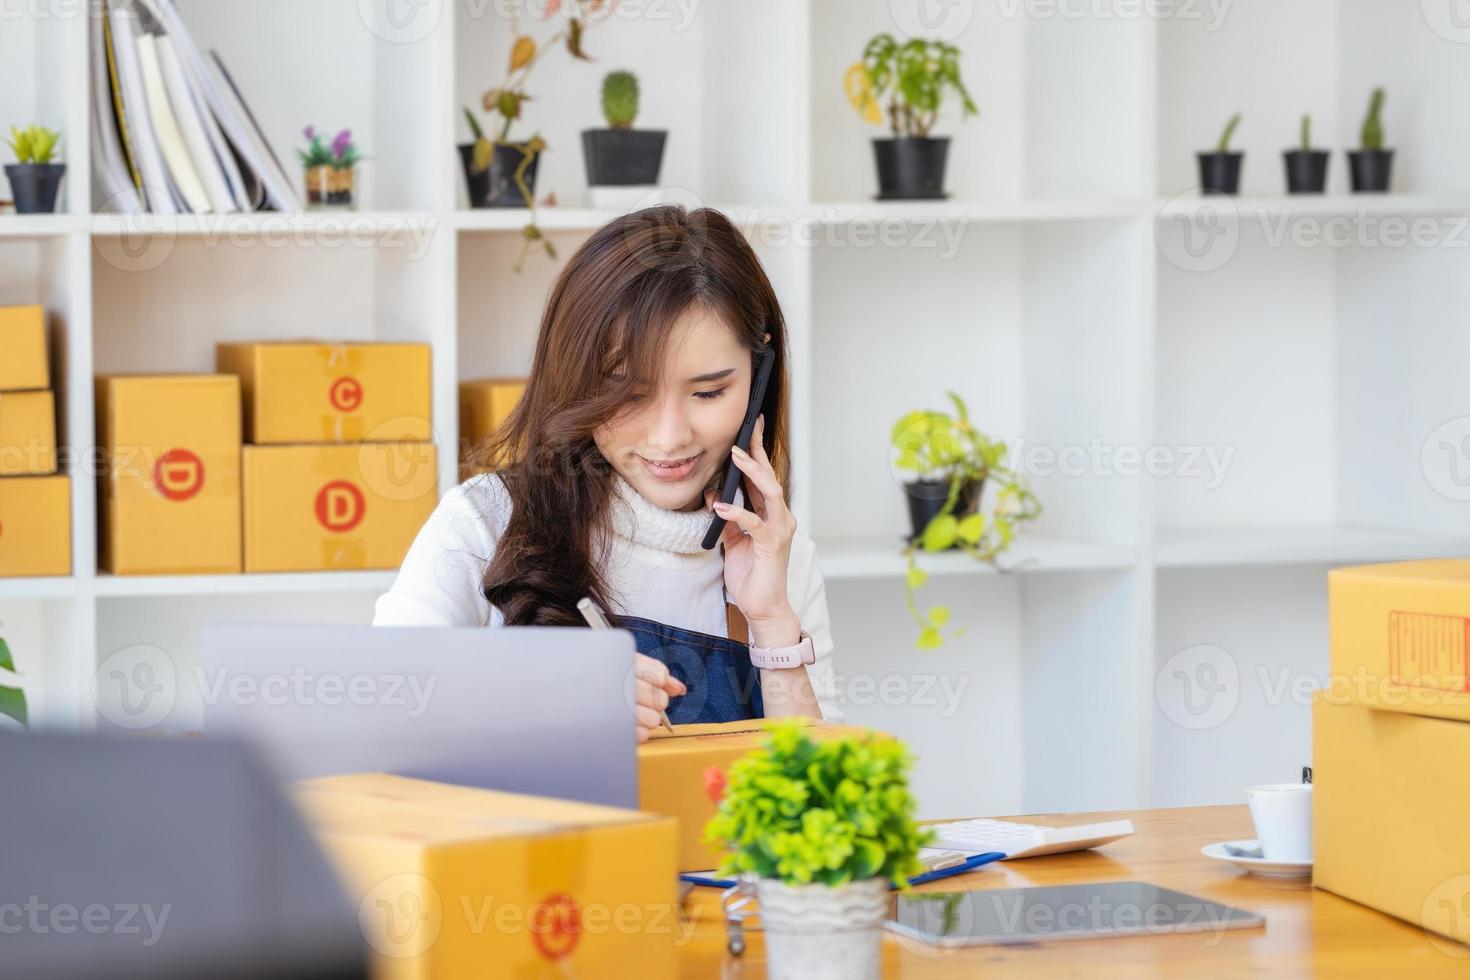 trabalho a partir de casa. mulheres felizes que vendem produtos on-line iniciam uma pequena empresa usando smartphone e laptop para calcular preços e se preparar para postagem. foto